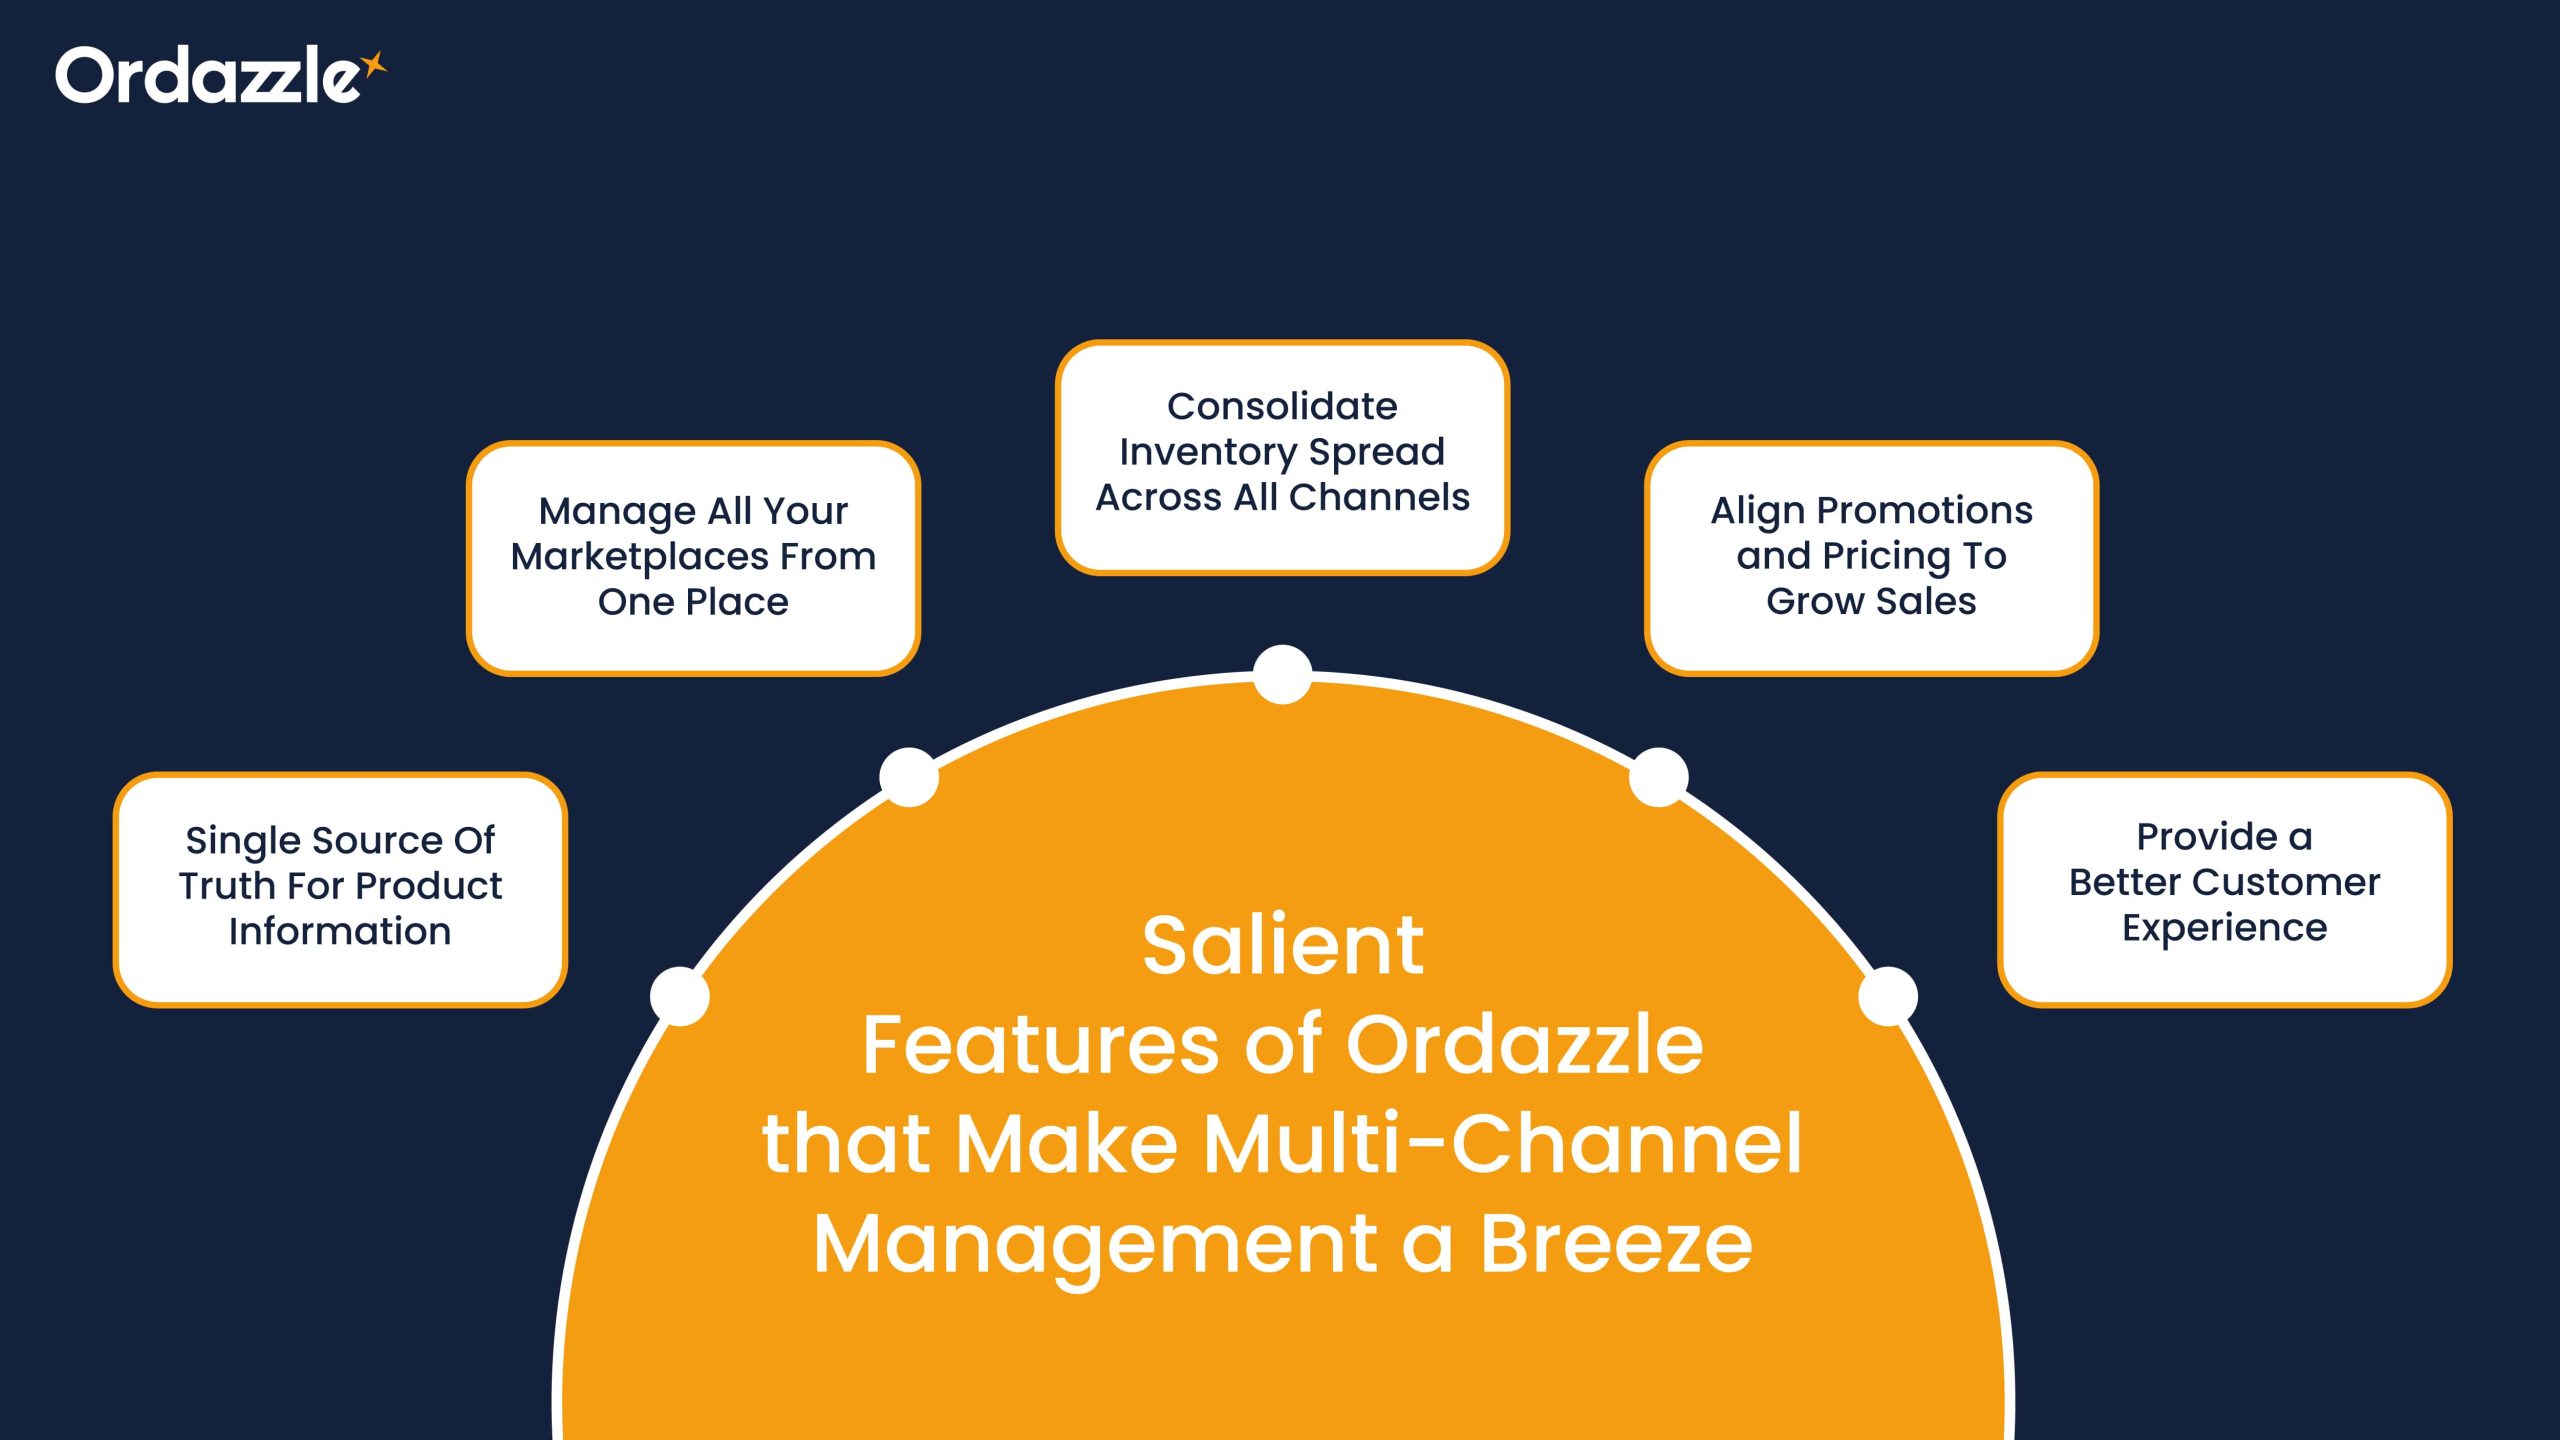 Multi-Channel Management a Breeze